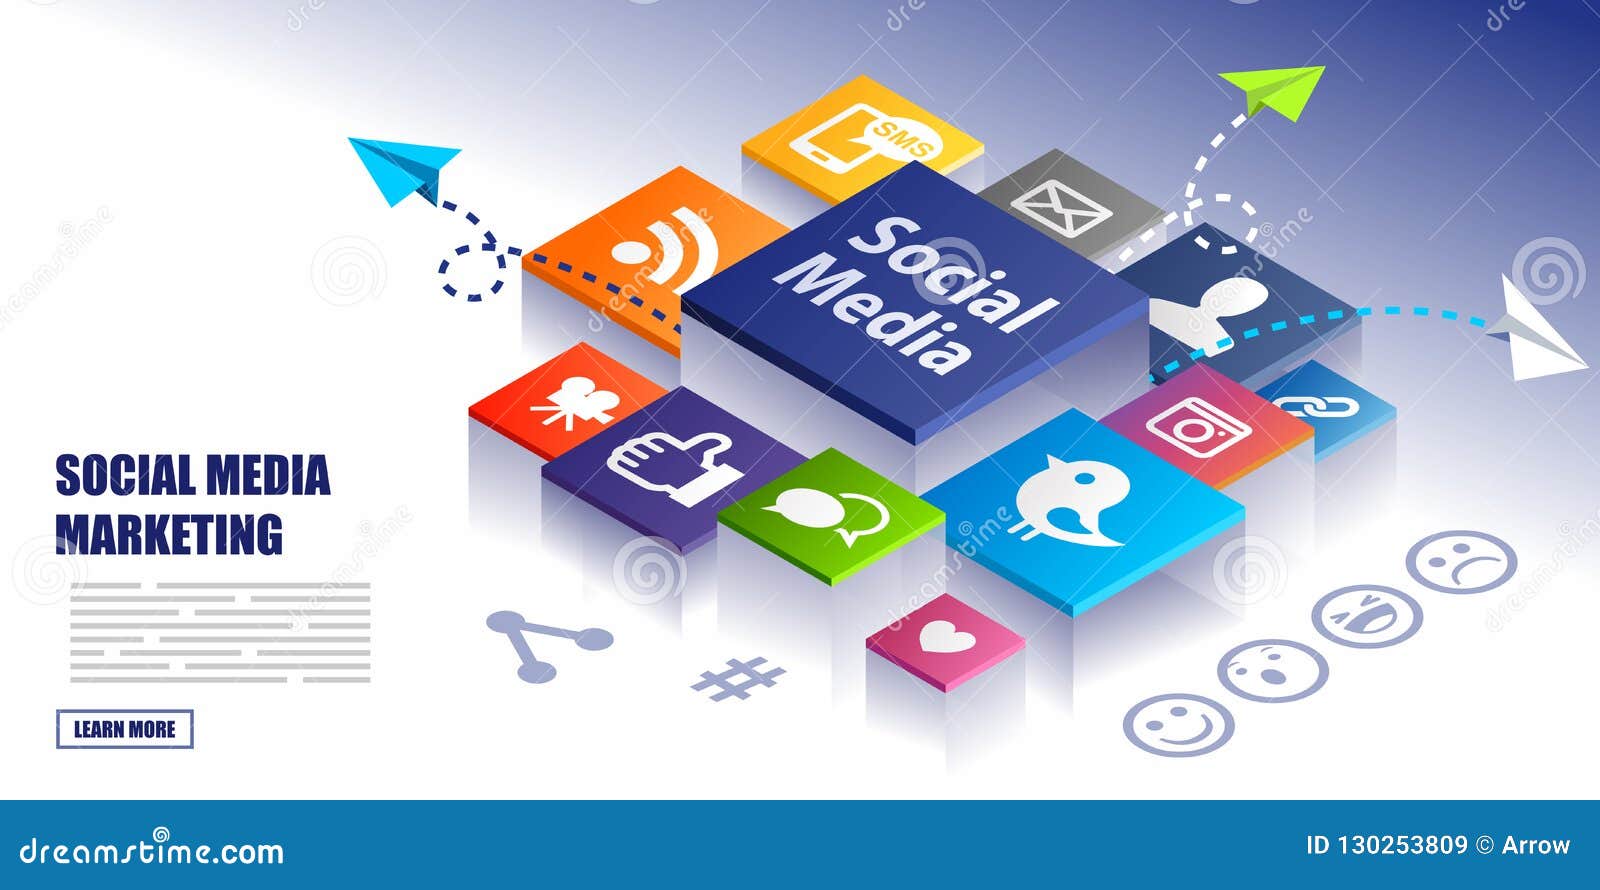 Details 100 social media marketing background